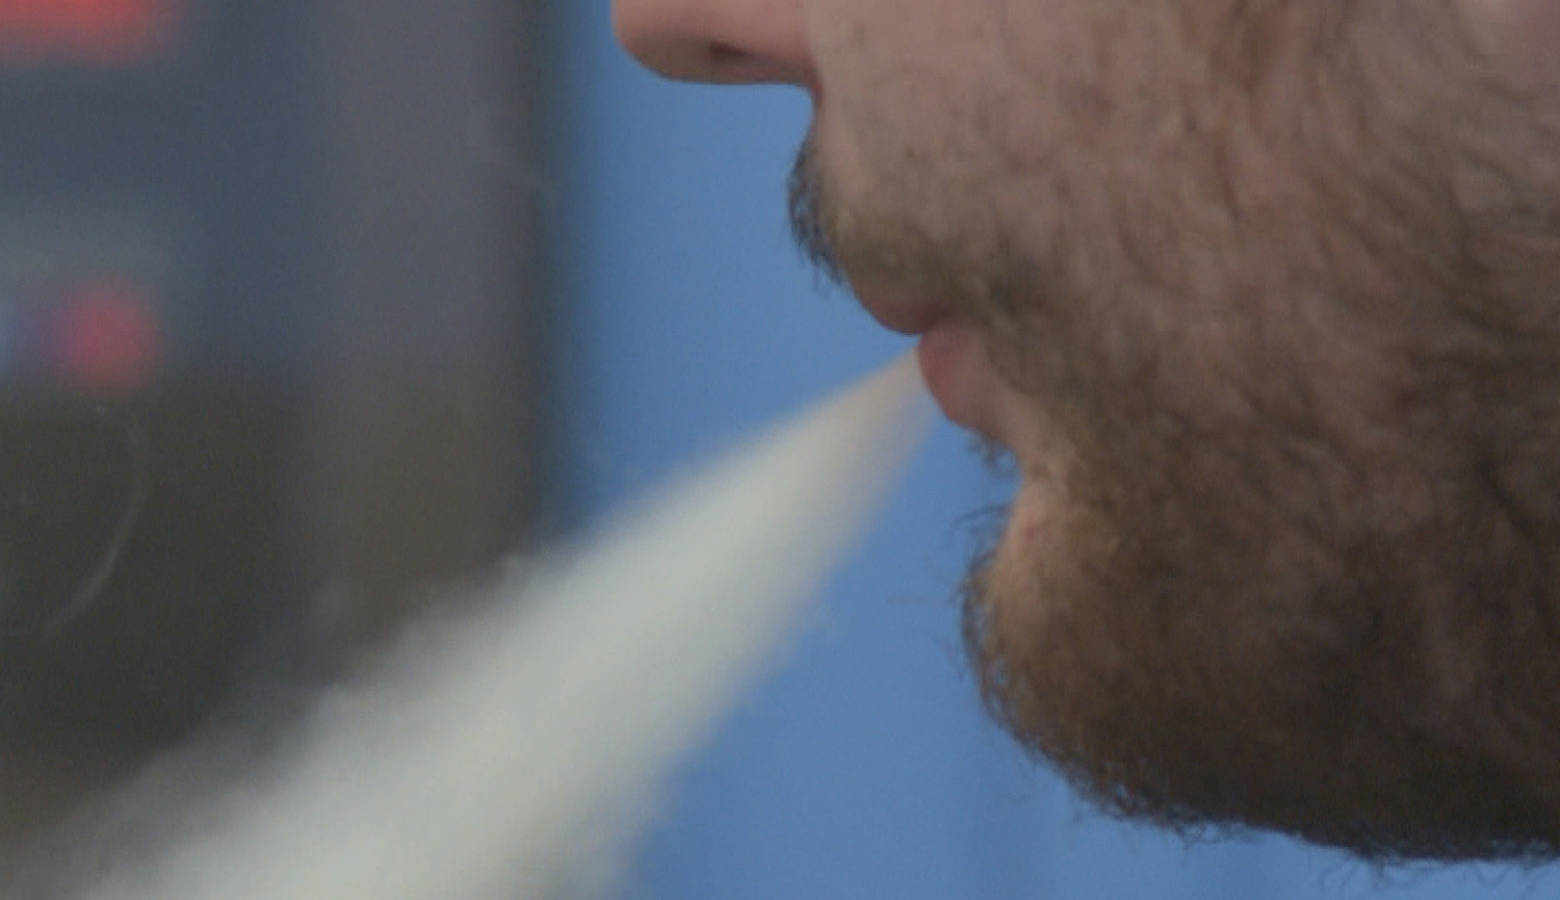 Exhaling smoke from an e-cigarette. (WFIU/WTIU)